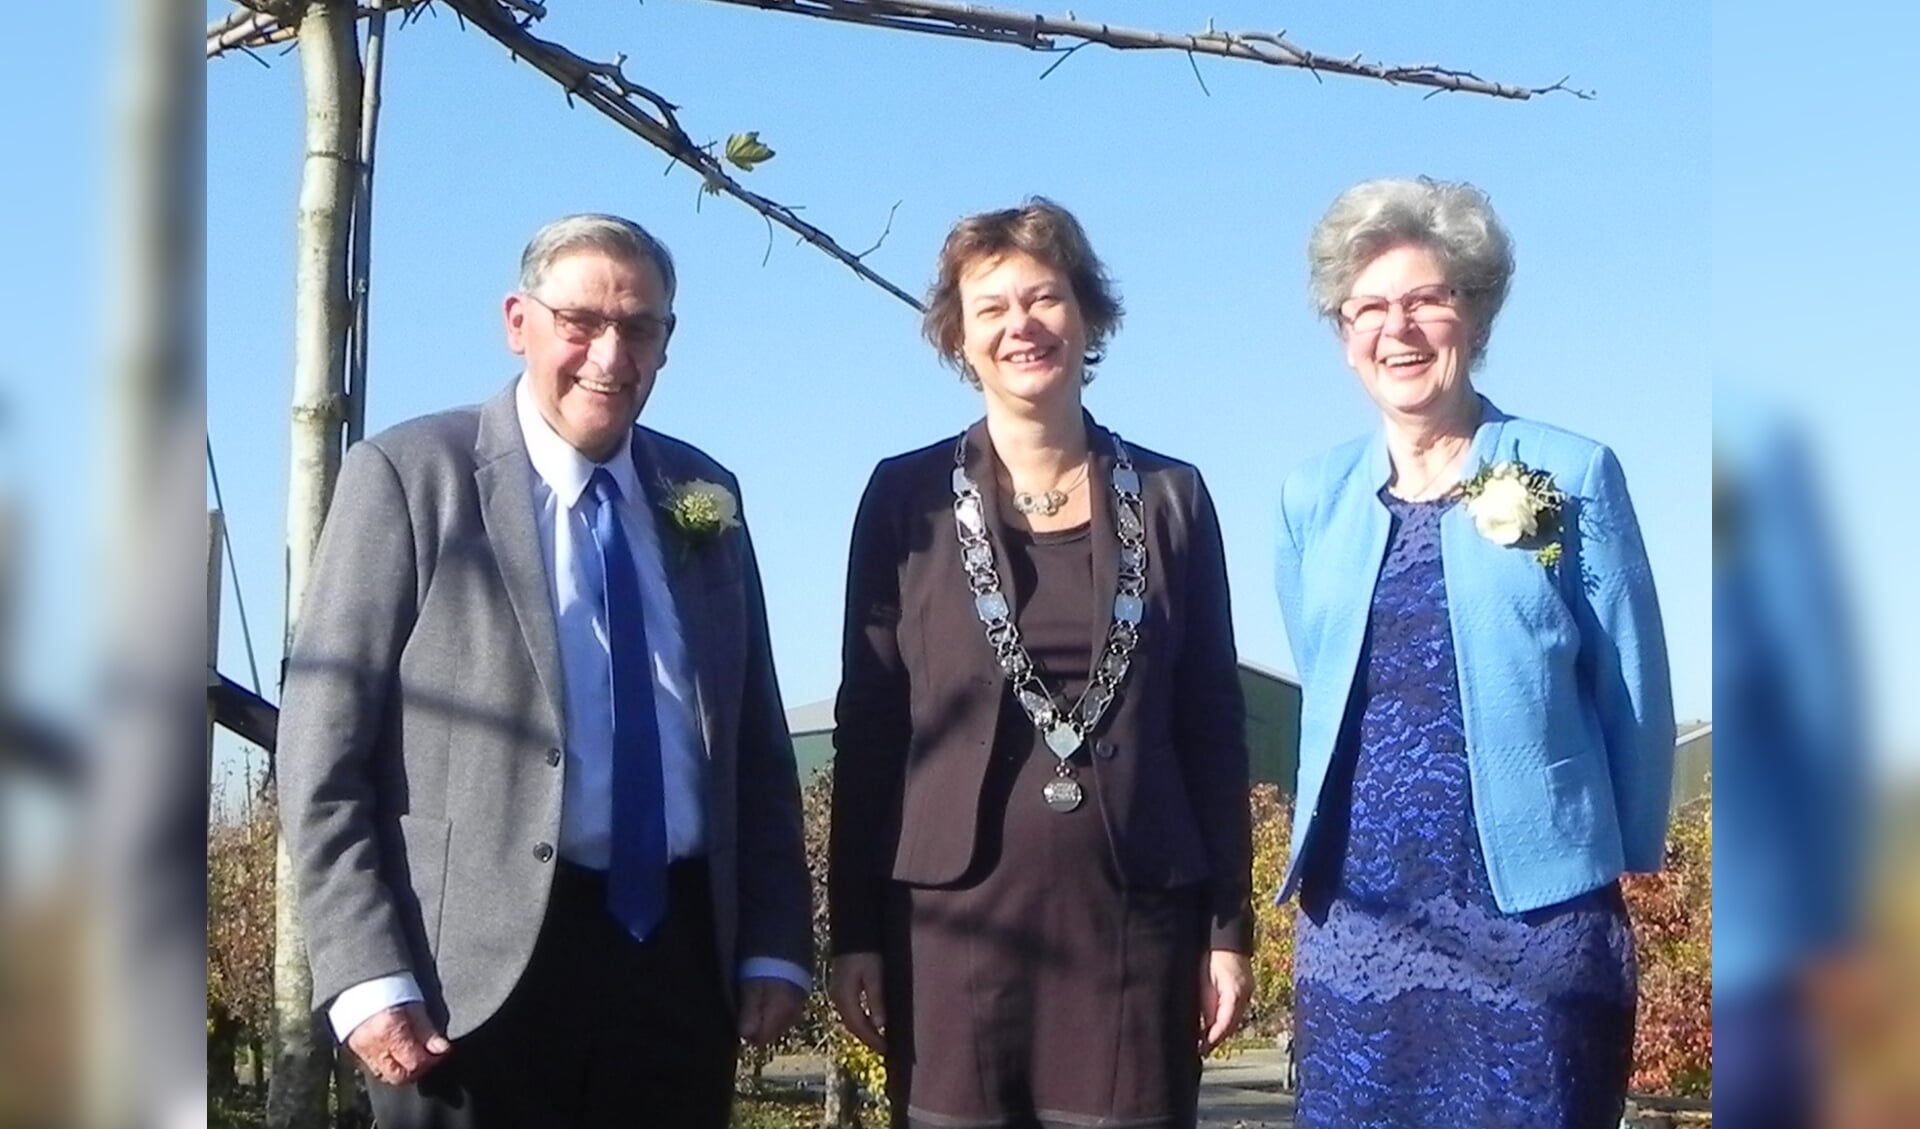 Het 50-jarig bruidspaar Van Doorn-Brouwer werd persoonlijk gefeliciteerd door locoburgemeester Erika Spil.